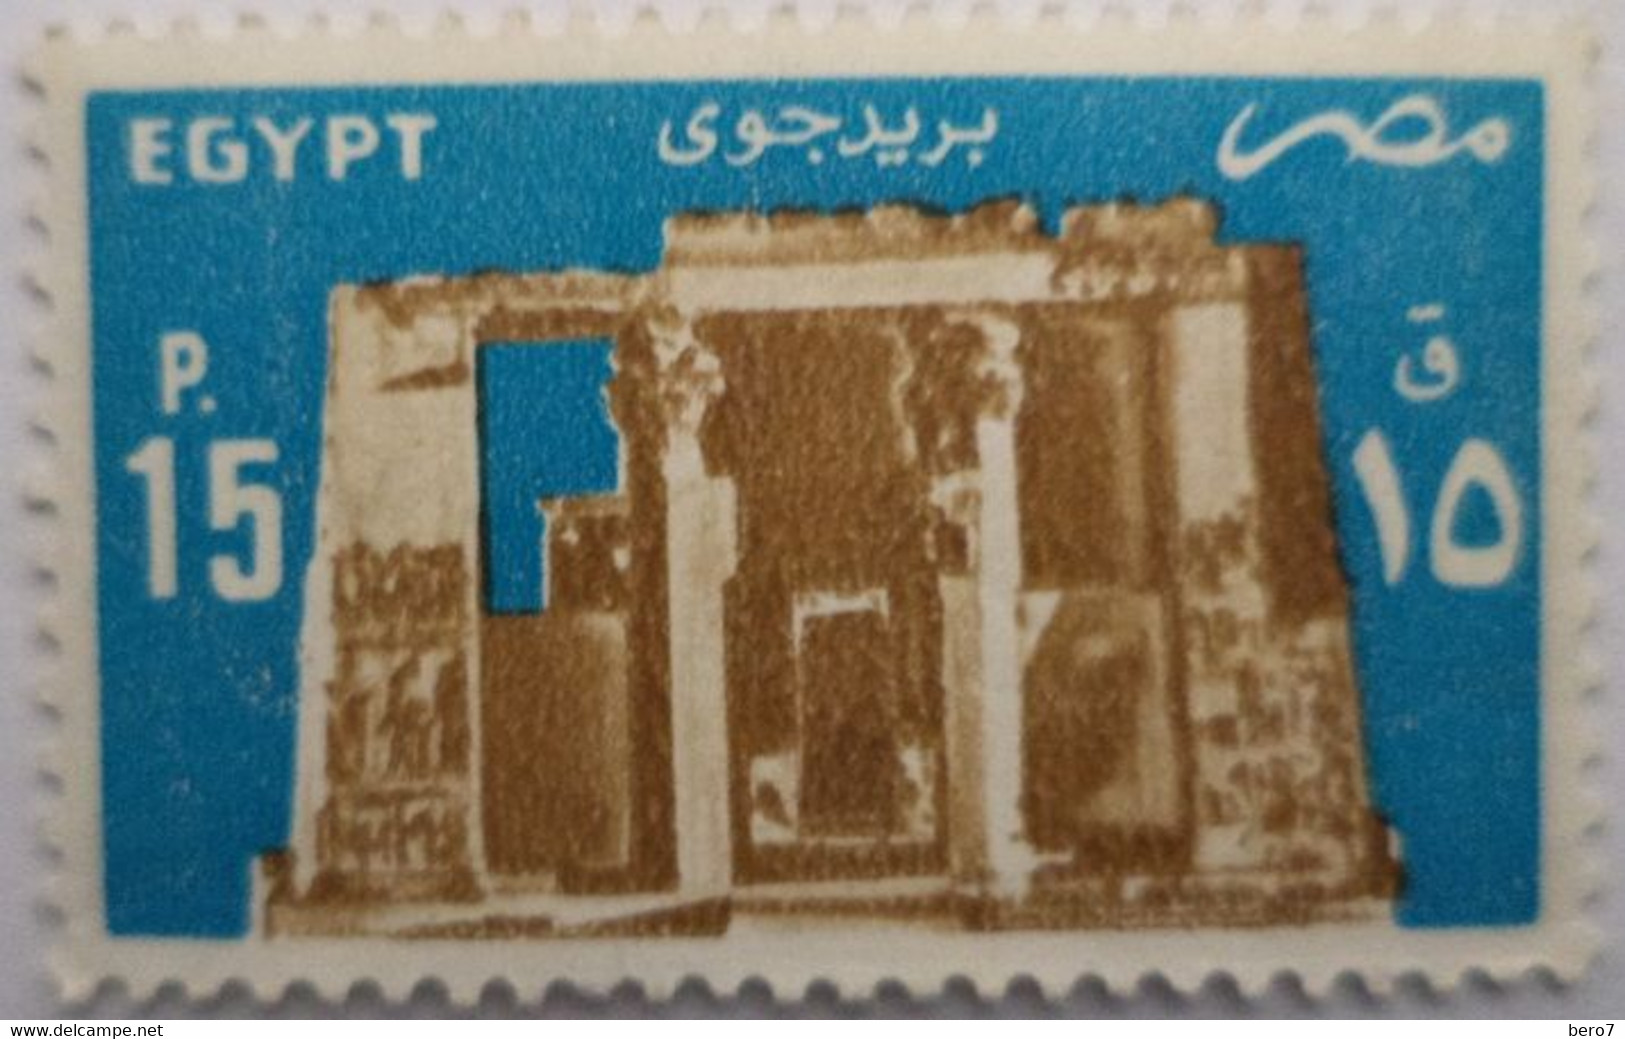 EGYPT- 1985 - Temple Of Horus, Edfu [MNH] (Egypte) (Egitto) (Ägypten) - Gebruikt